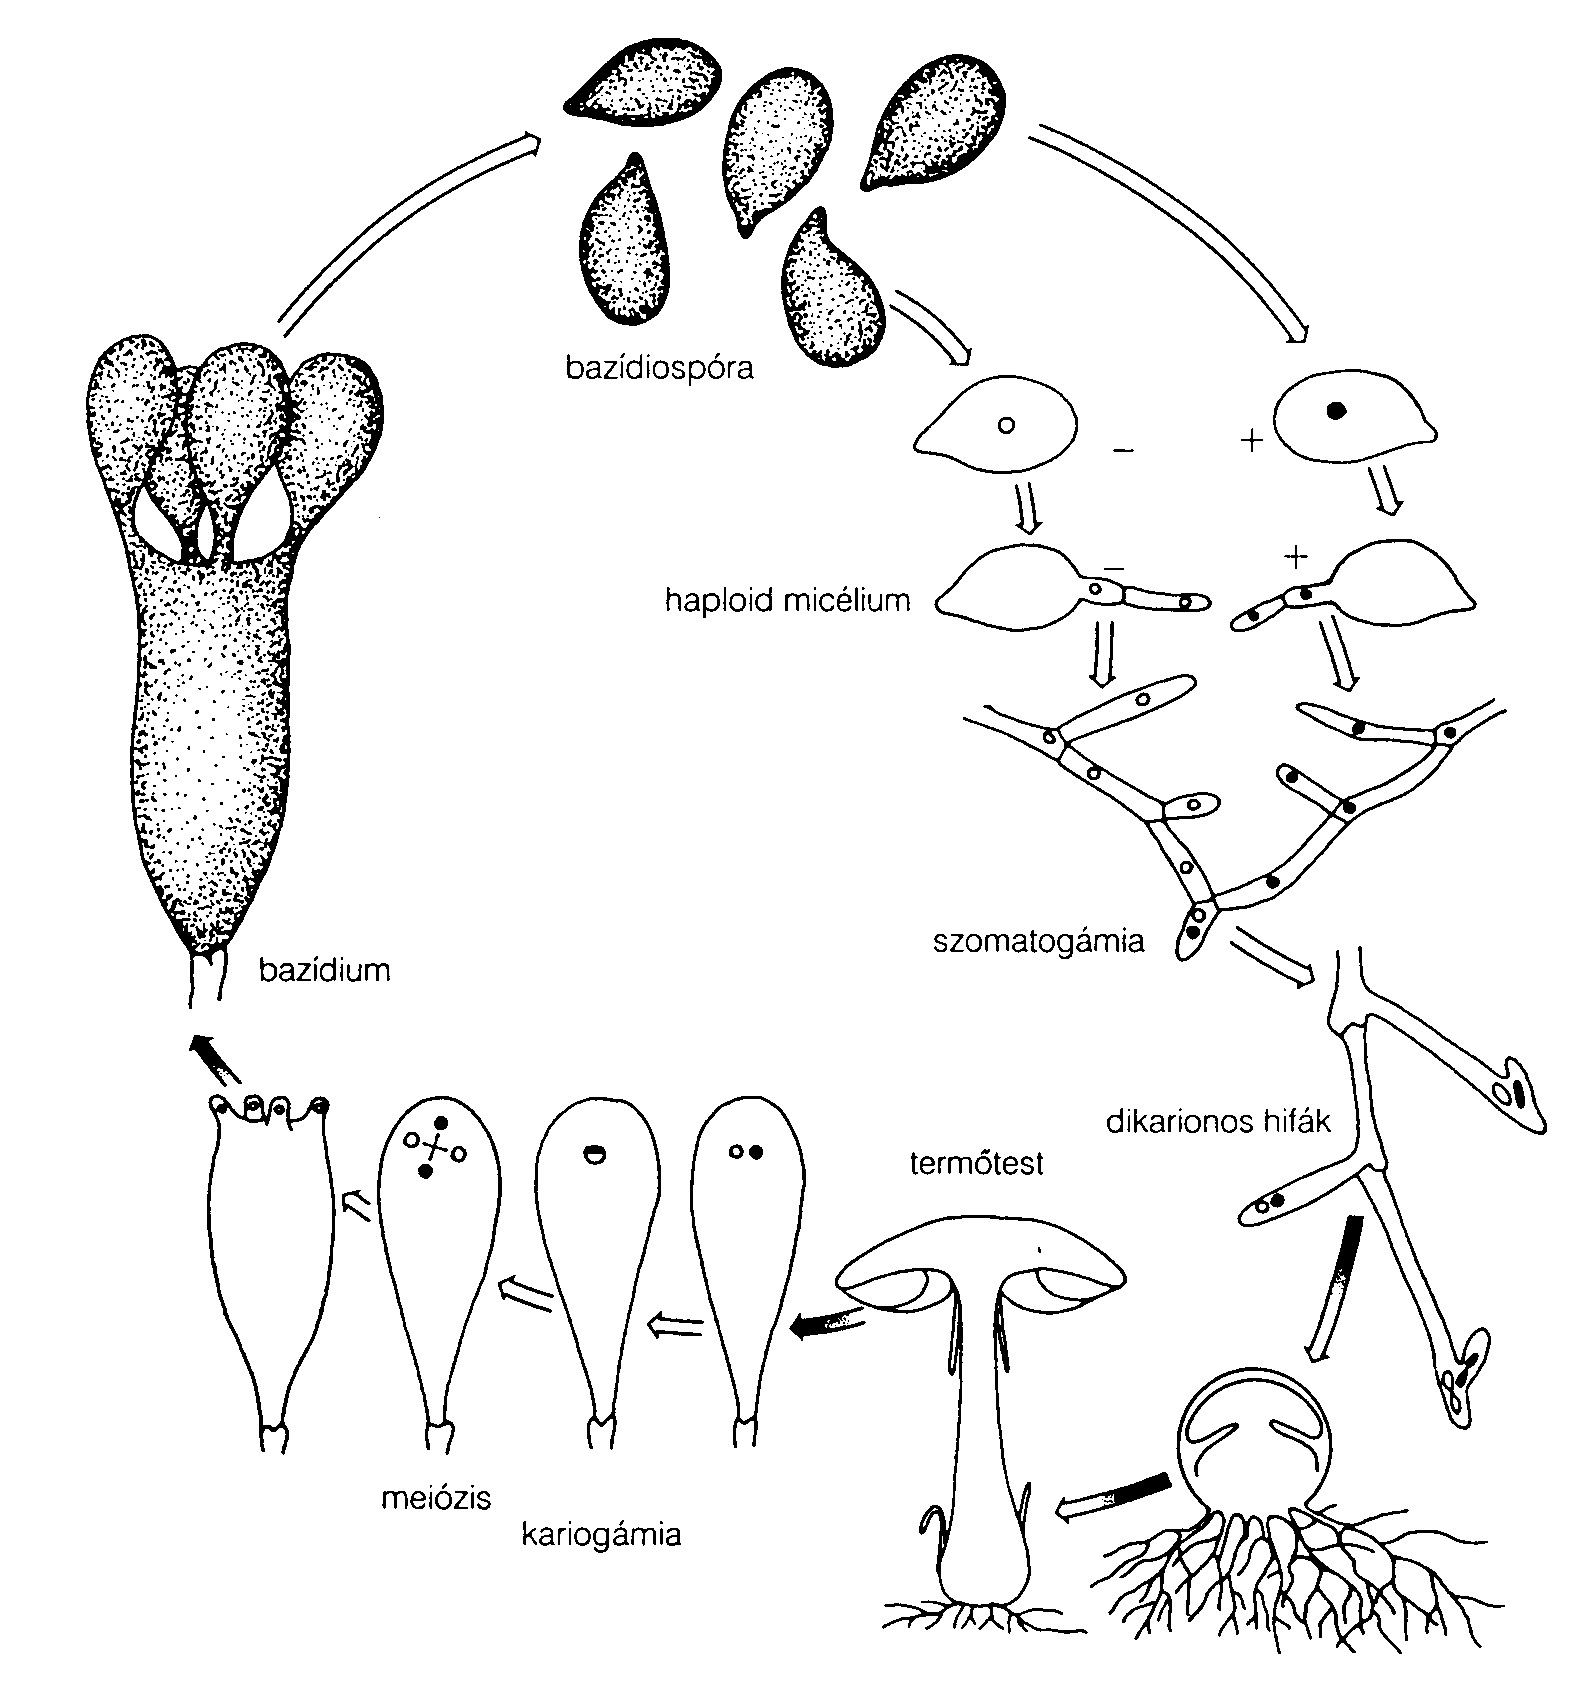 Hogyan termesszünk otthon gombát? - Zöld biznisz - Világos + zöld - Laskagomba micélium